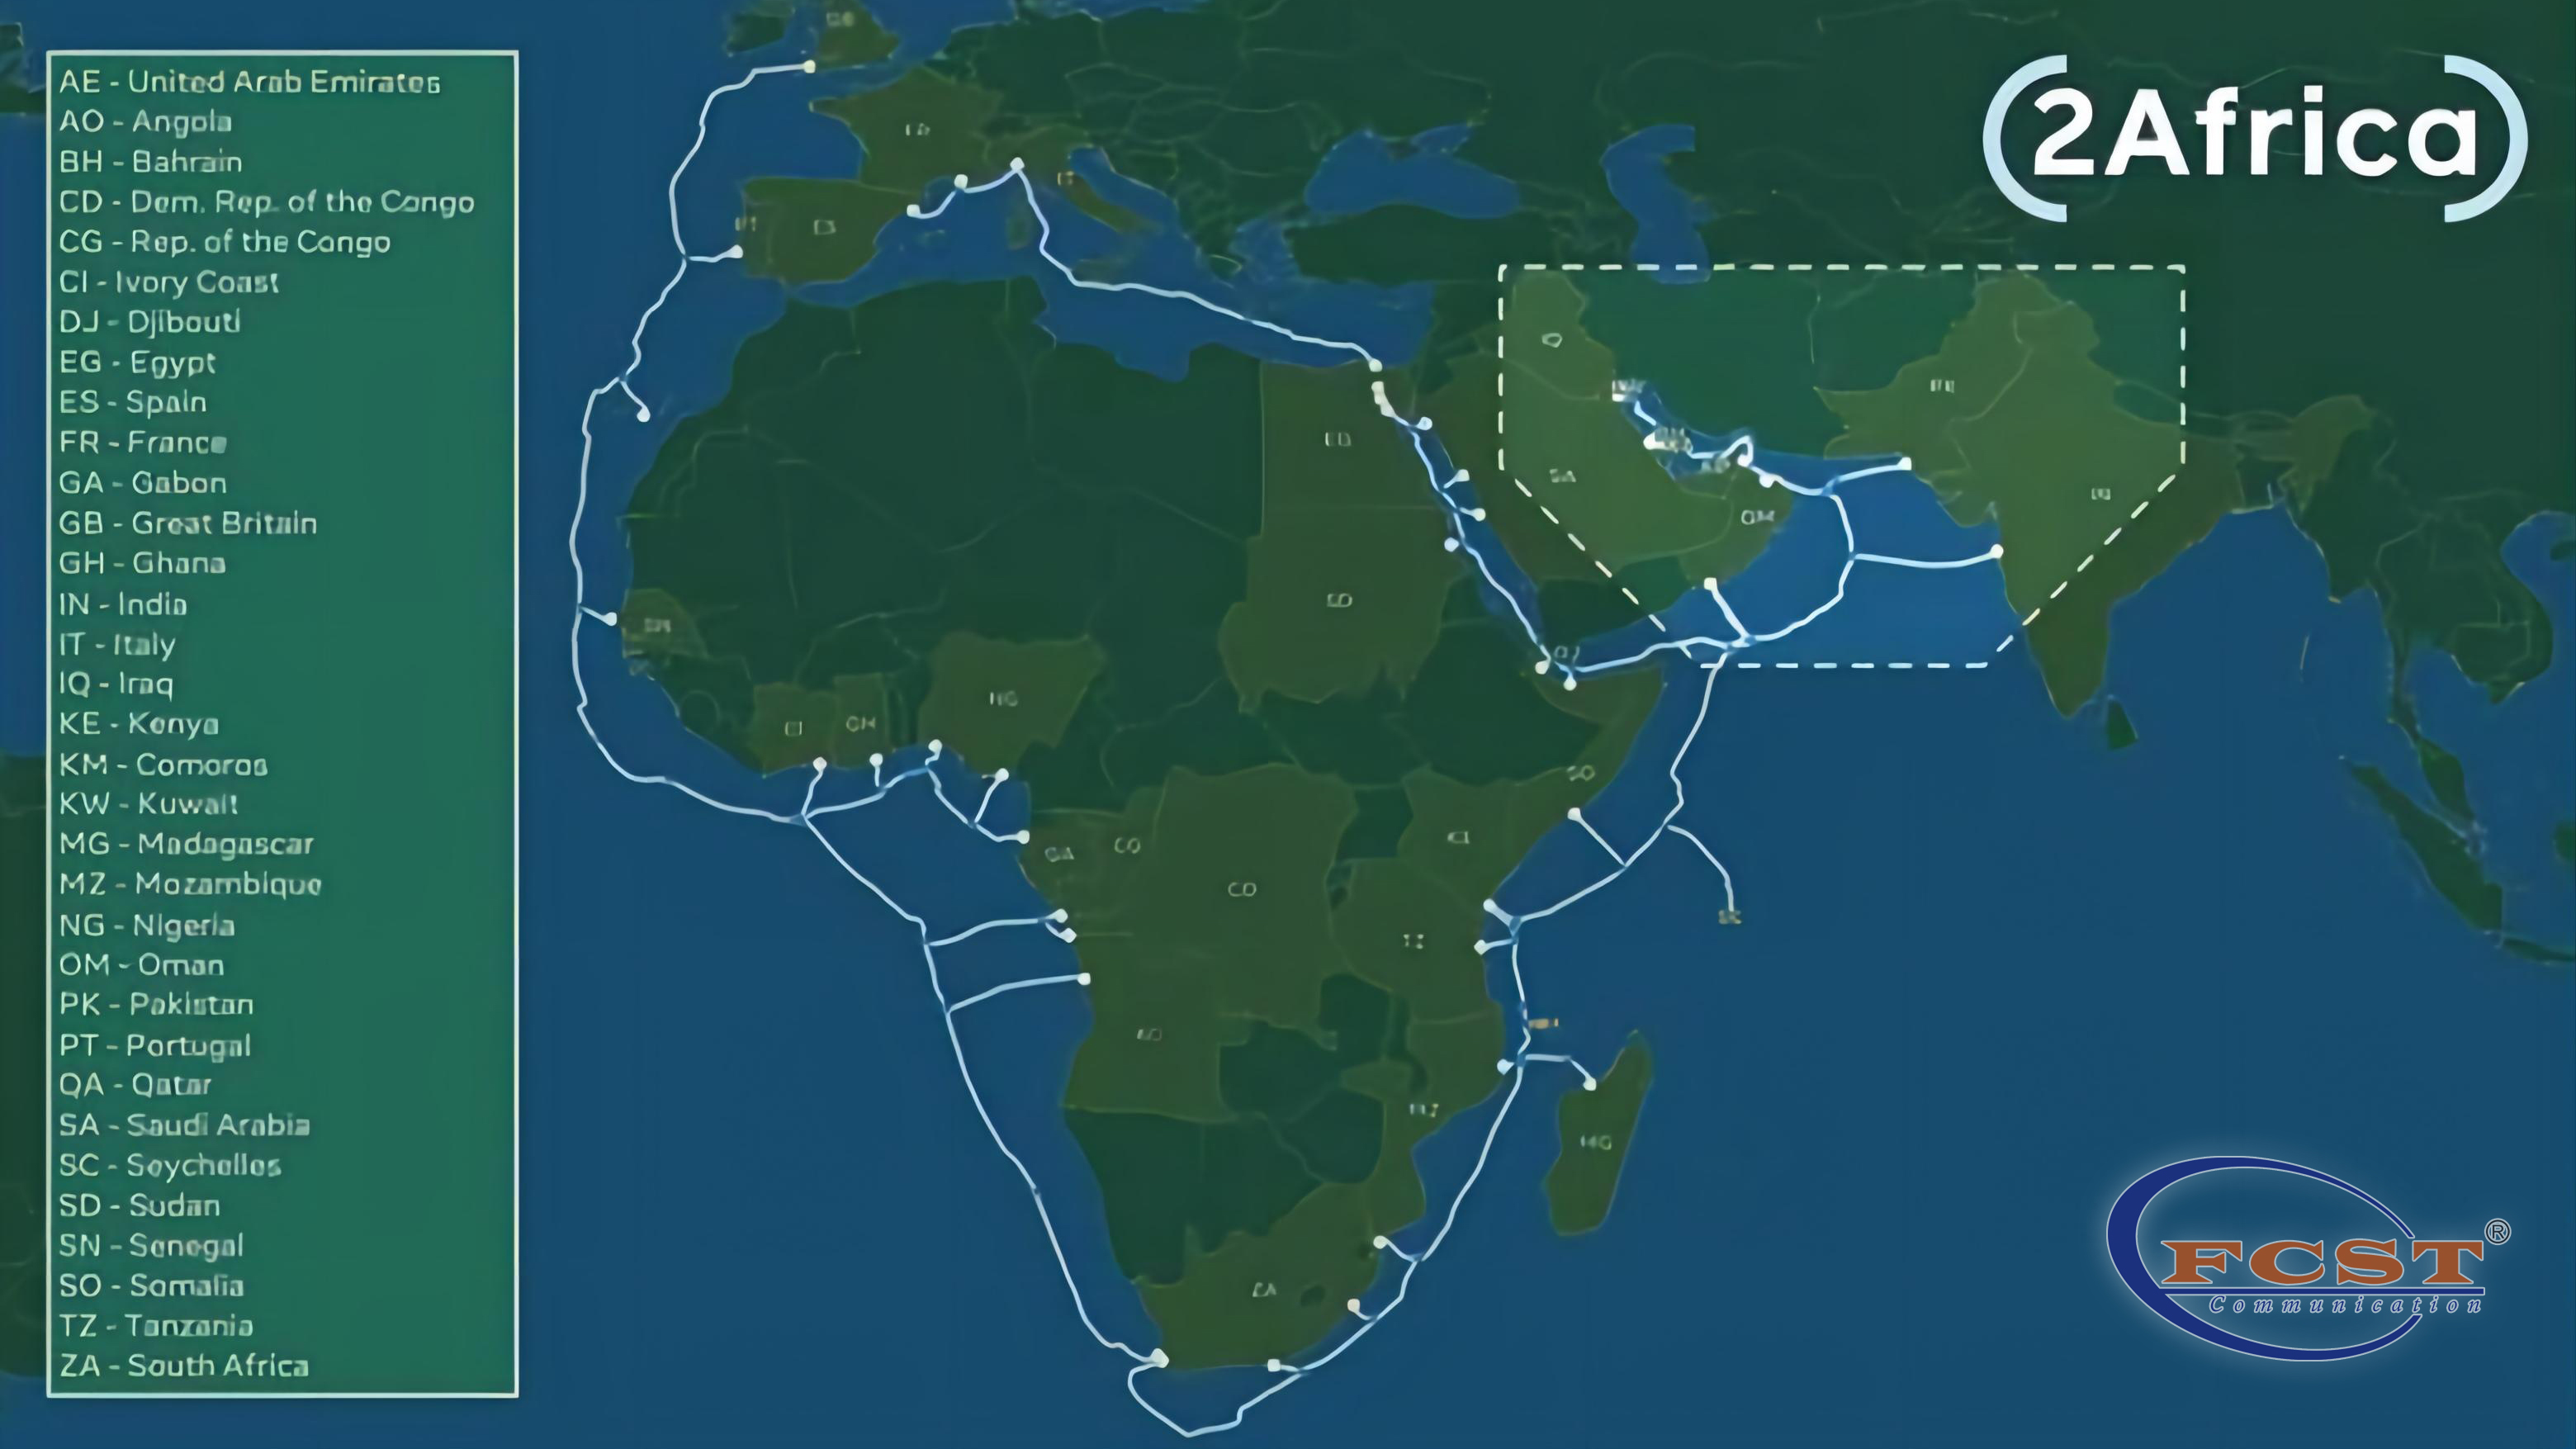 Télécom Egypte pour accéder au système de câble sous-marin 2Africa